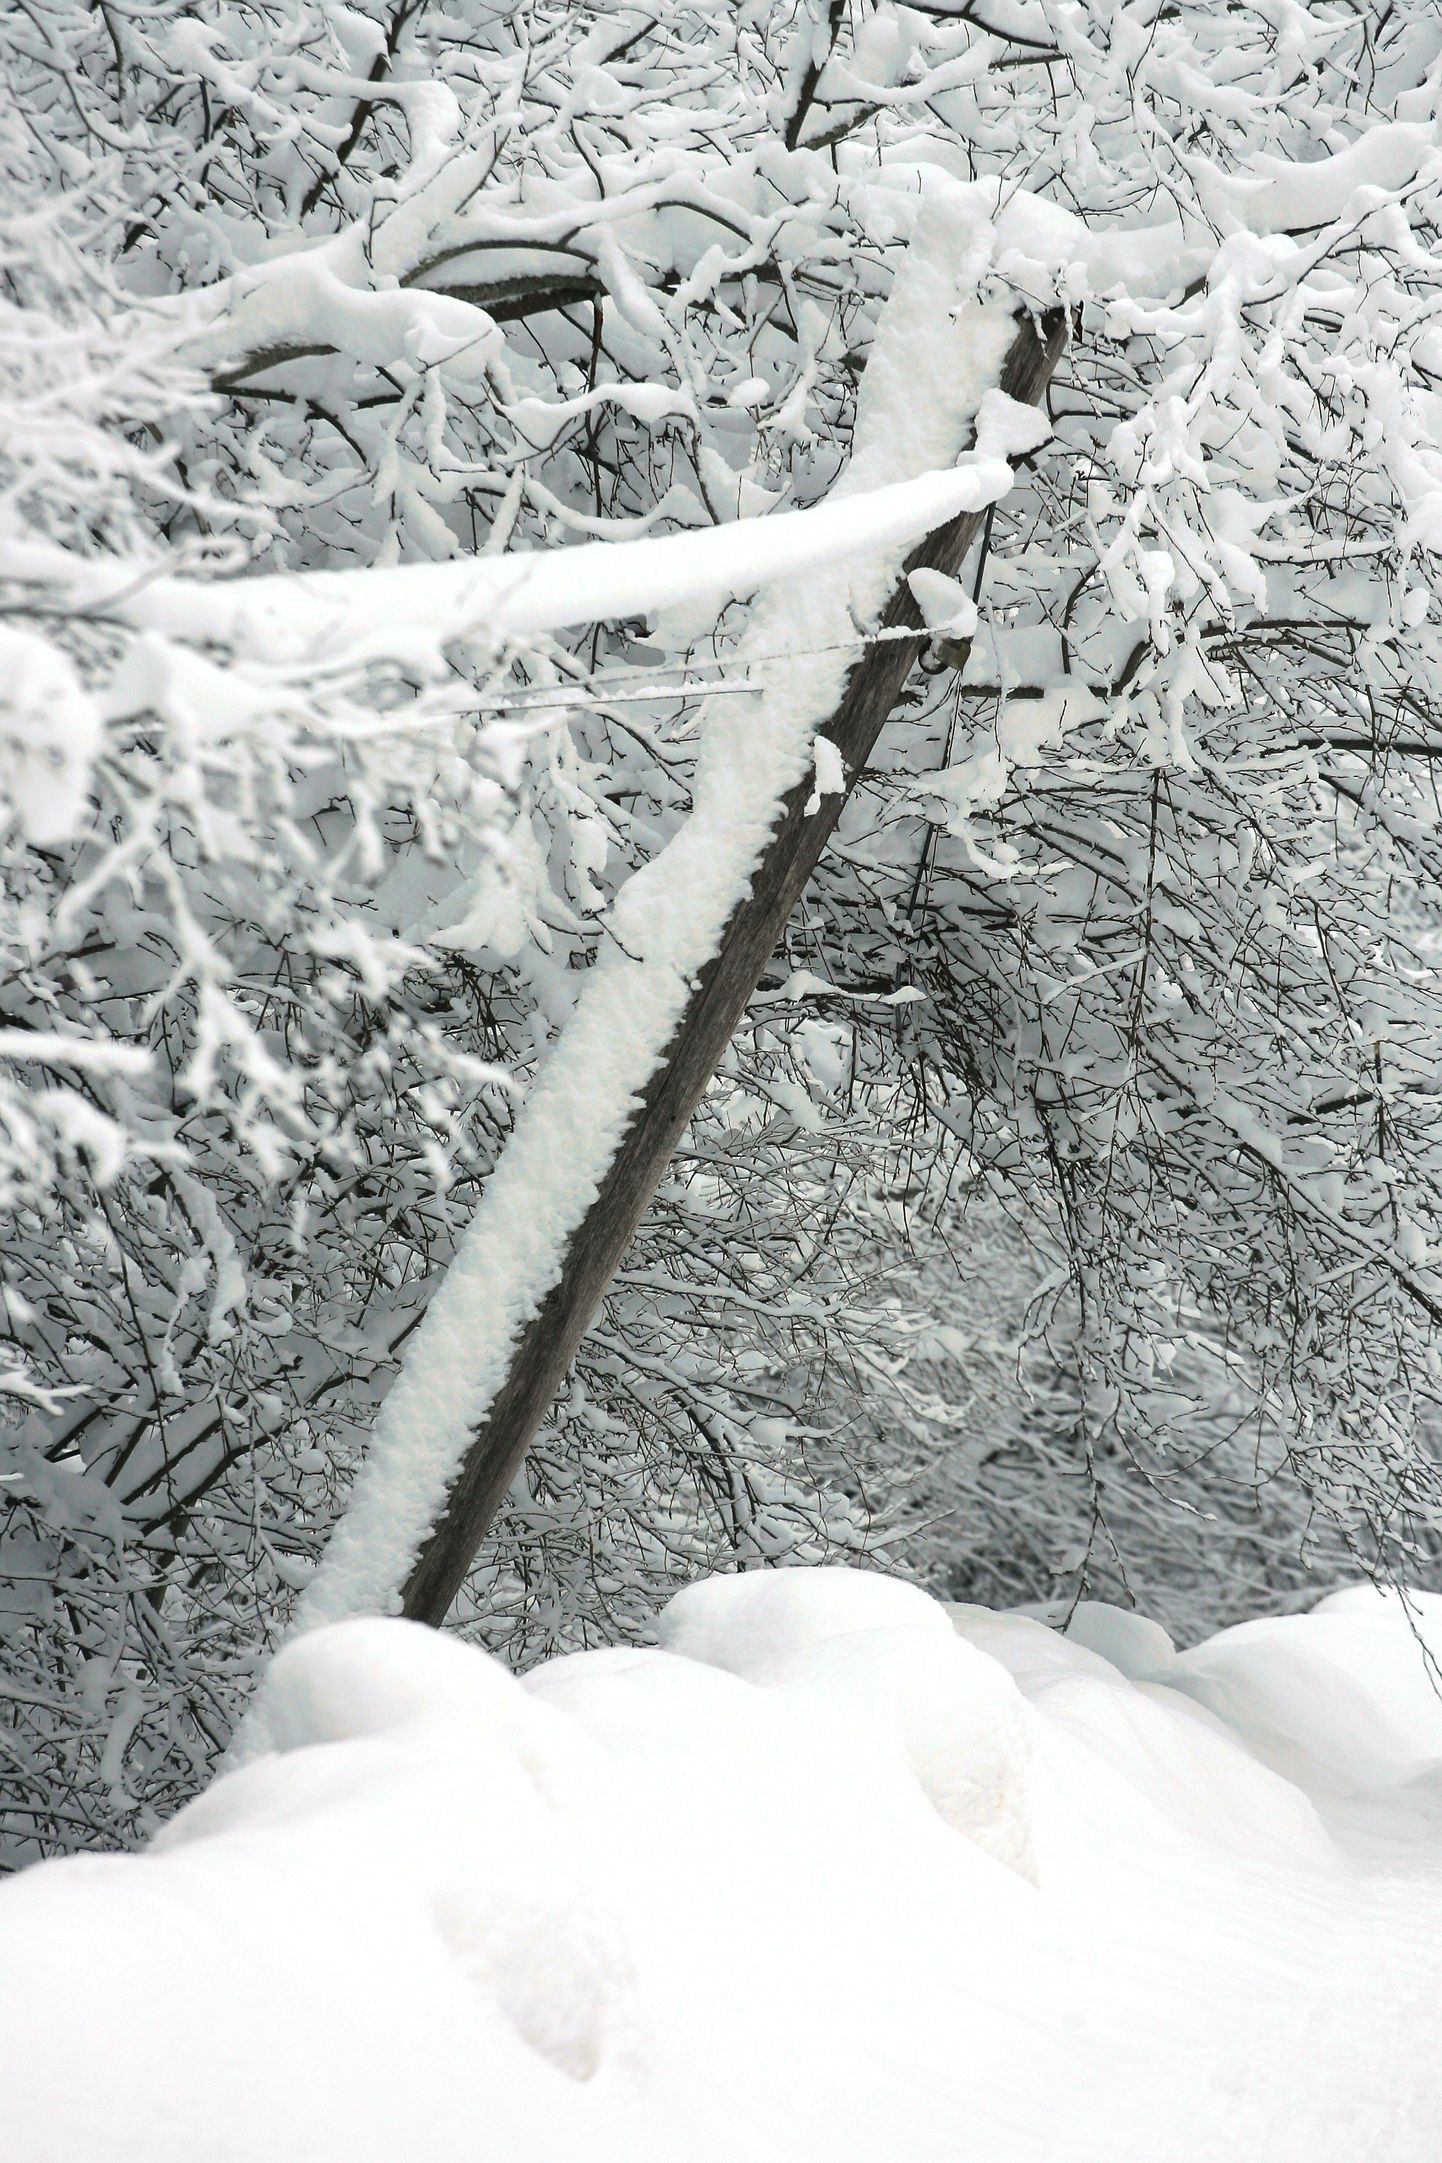 Lumi tõi kaasa elektrikatkestused, kõige rohkem katkestusi on Viljandimaal.